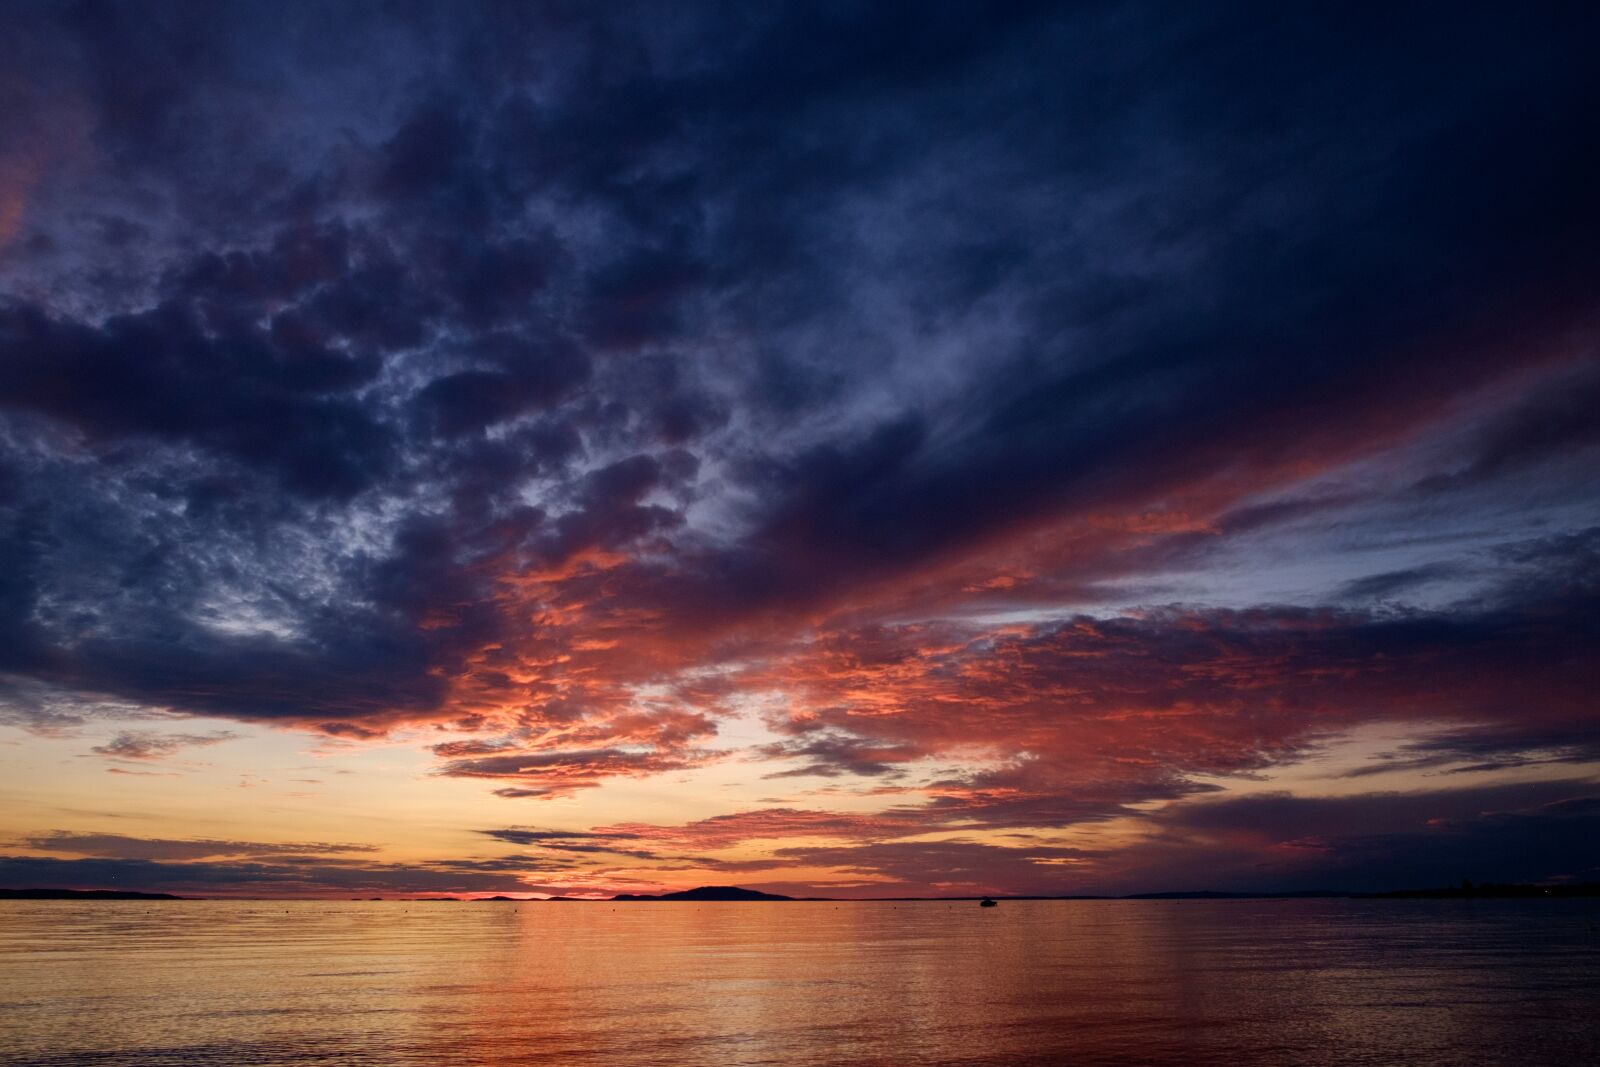 Fujifilm X-T1 sample photo. Sunset, sea, seascape photography